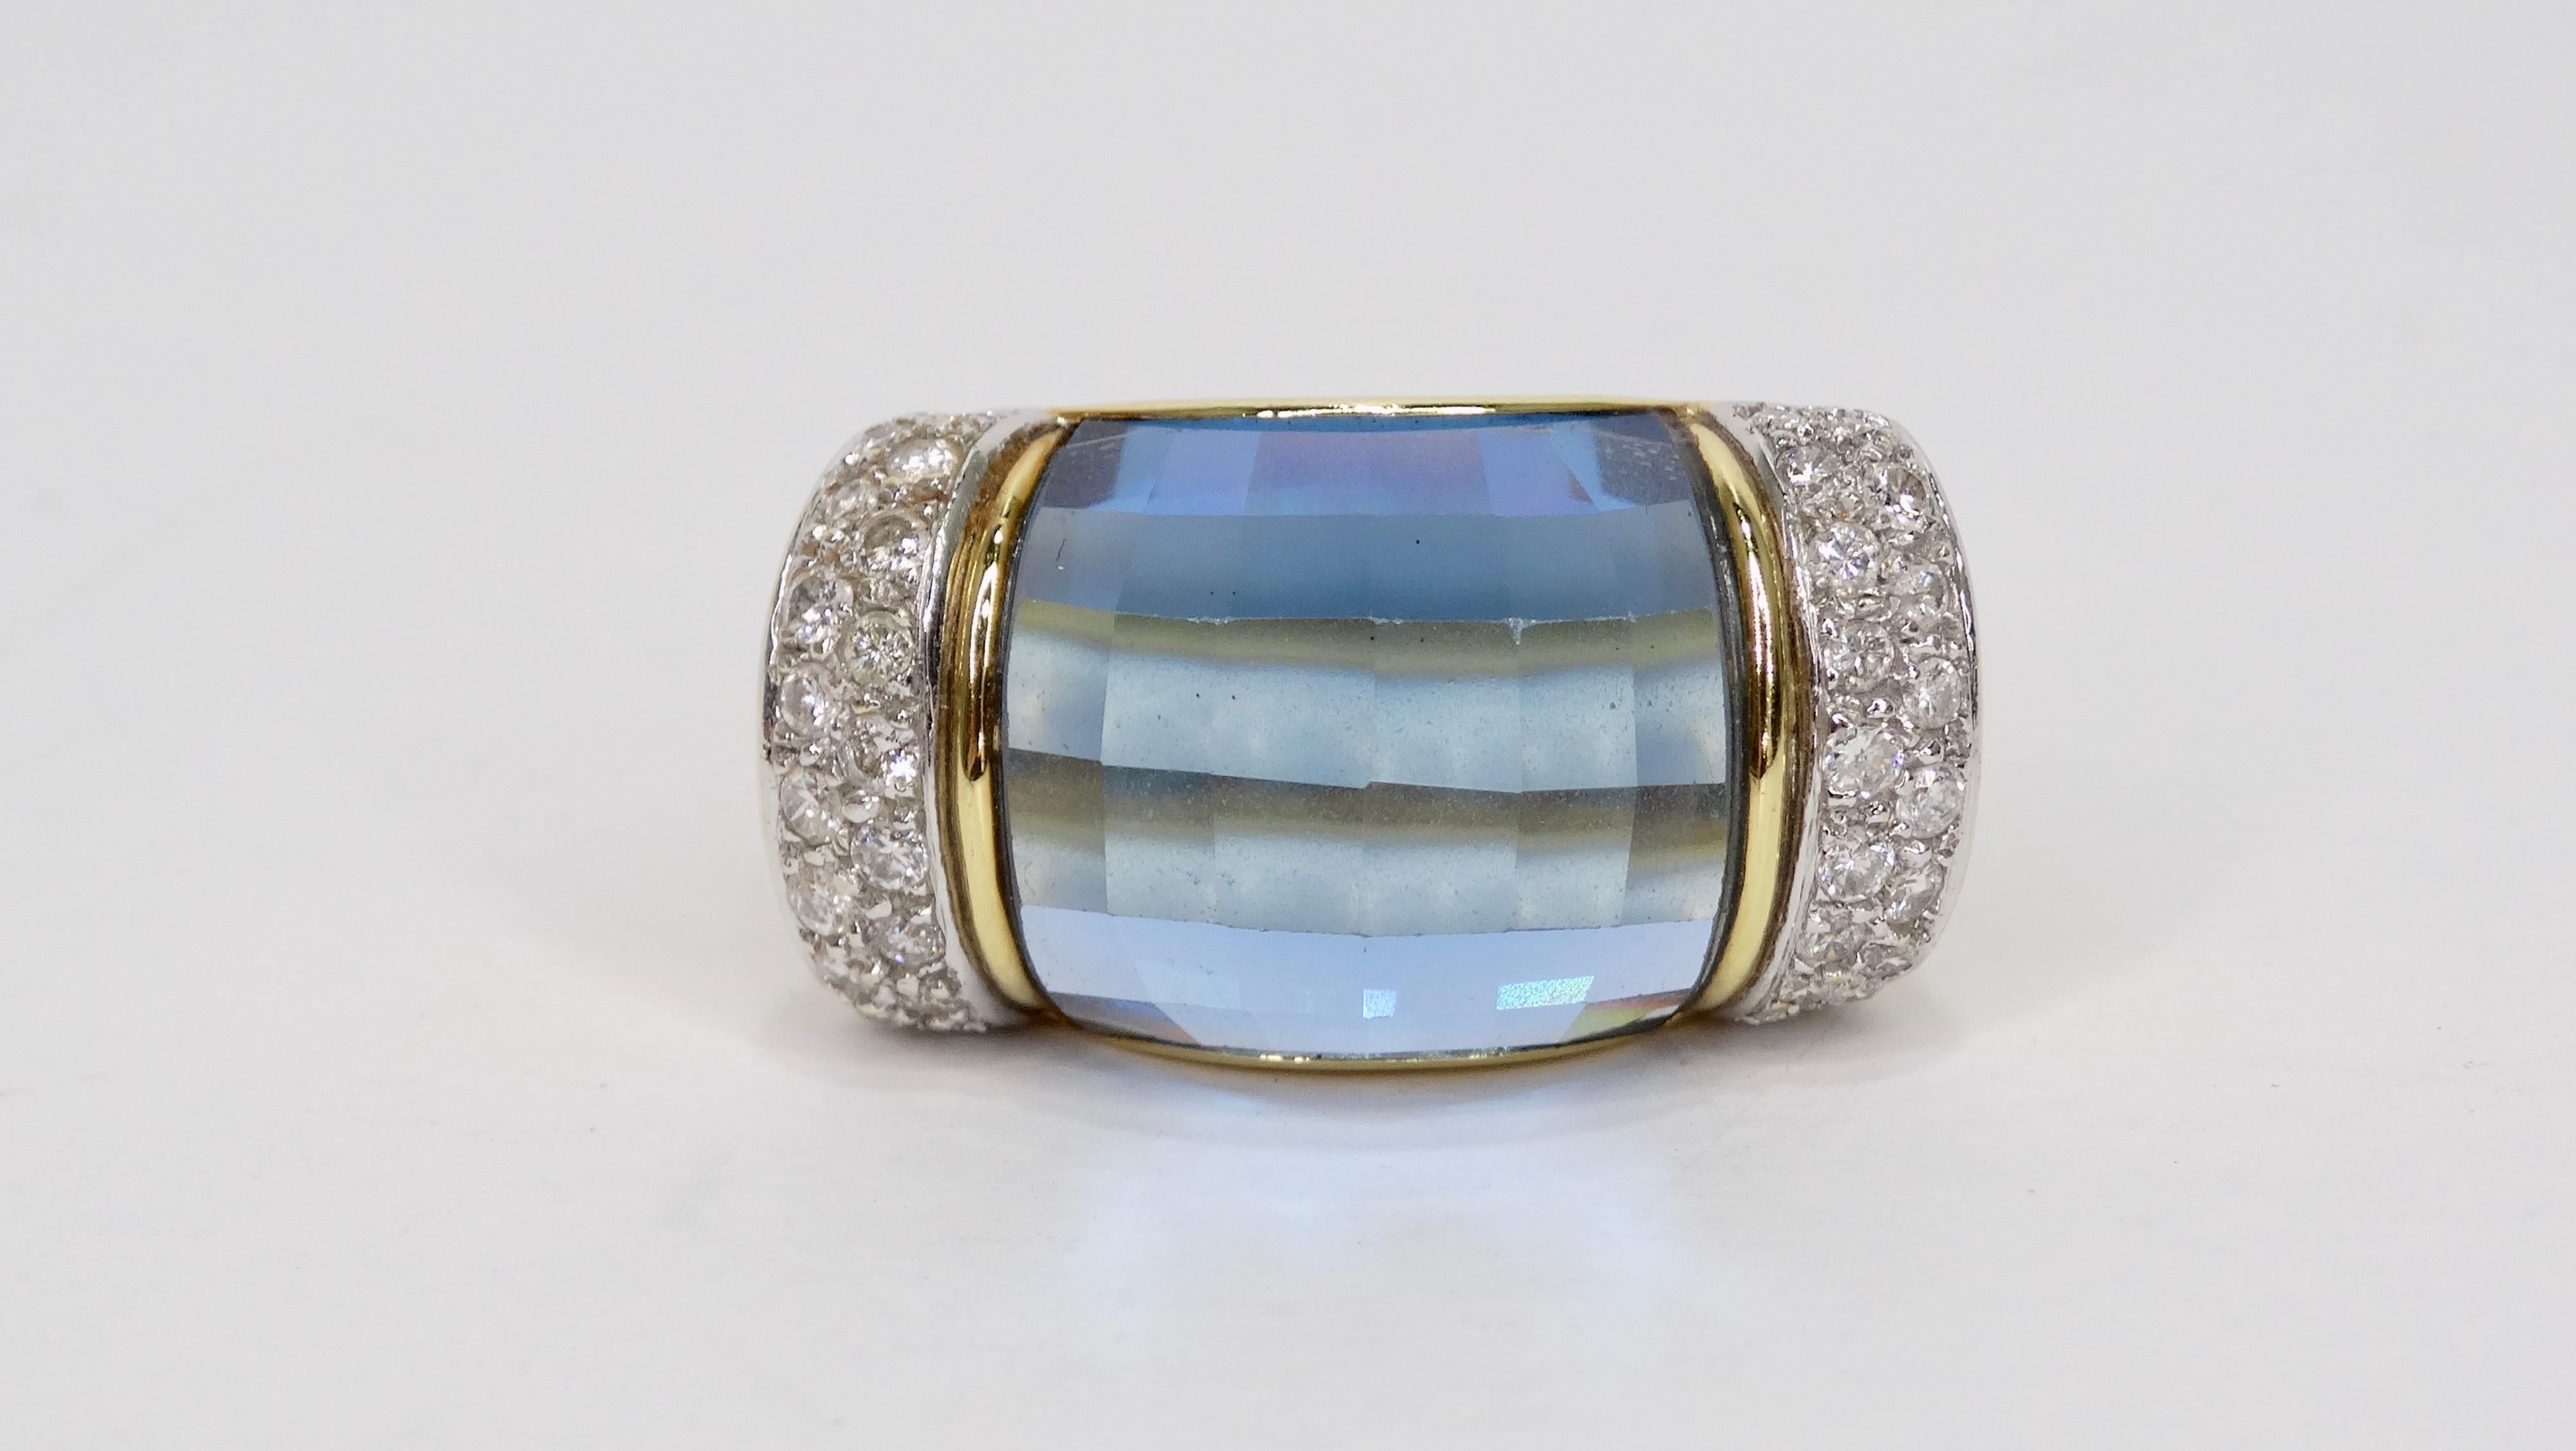 Vervollständigen Sie Ihren Abendlook mit diesem wunderschönen Ring! Circa Mitte des 20. Jahrhunderts, diese 18k Gold Ring verfügt über einen Gedanken Band mit einem schönen blauen Topas Edelstein in der Mitte und insgesamt 4 Reihen von Brillanten an